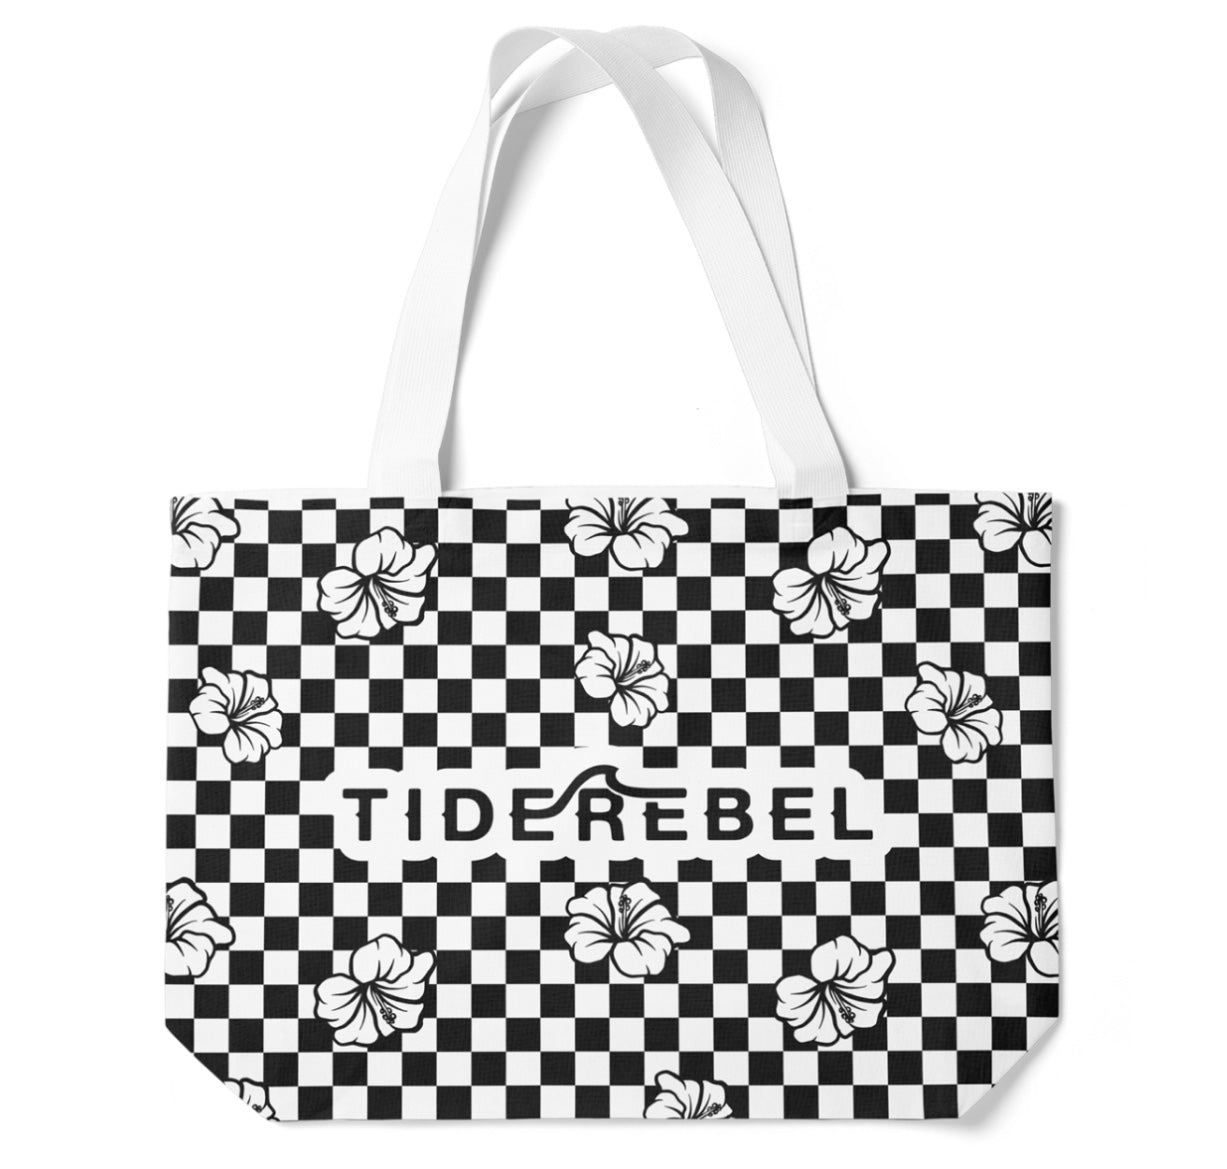 Tiderebel Checkered Tote Bag